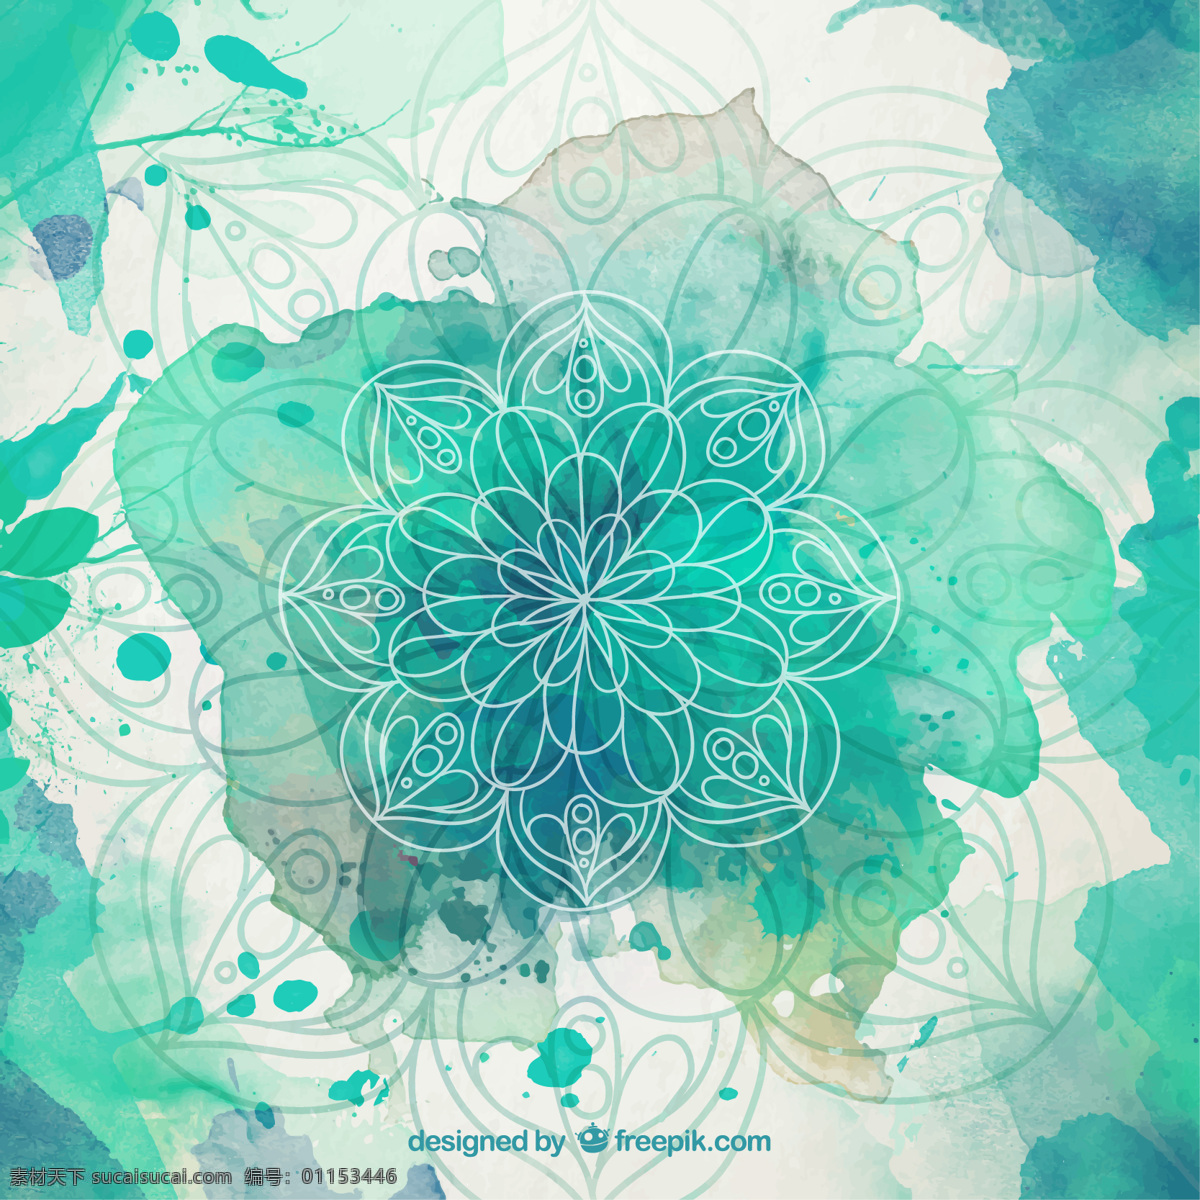 绿色 水彩 飞溅 曼荼罗 背景 花卉 抽象 手 装饰 曼陀罗 手绘 水彩花 形状 装饰品 阿拉伯语 印度 绘画 伊斯兰教